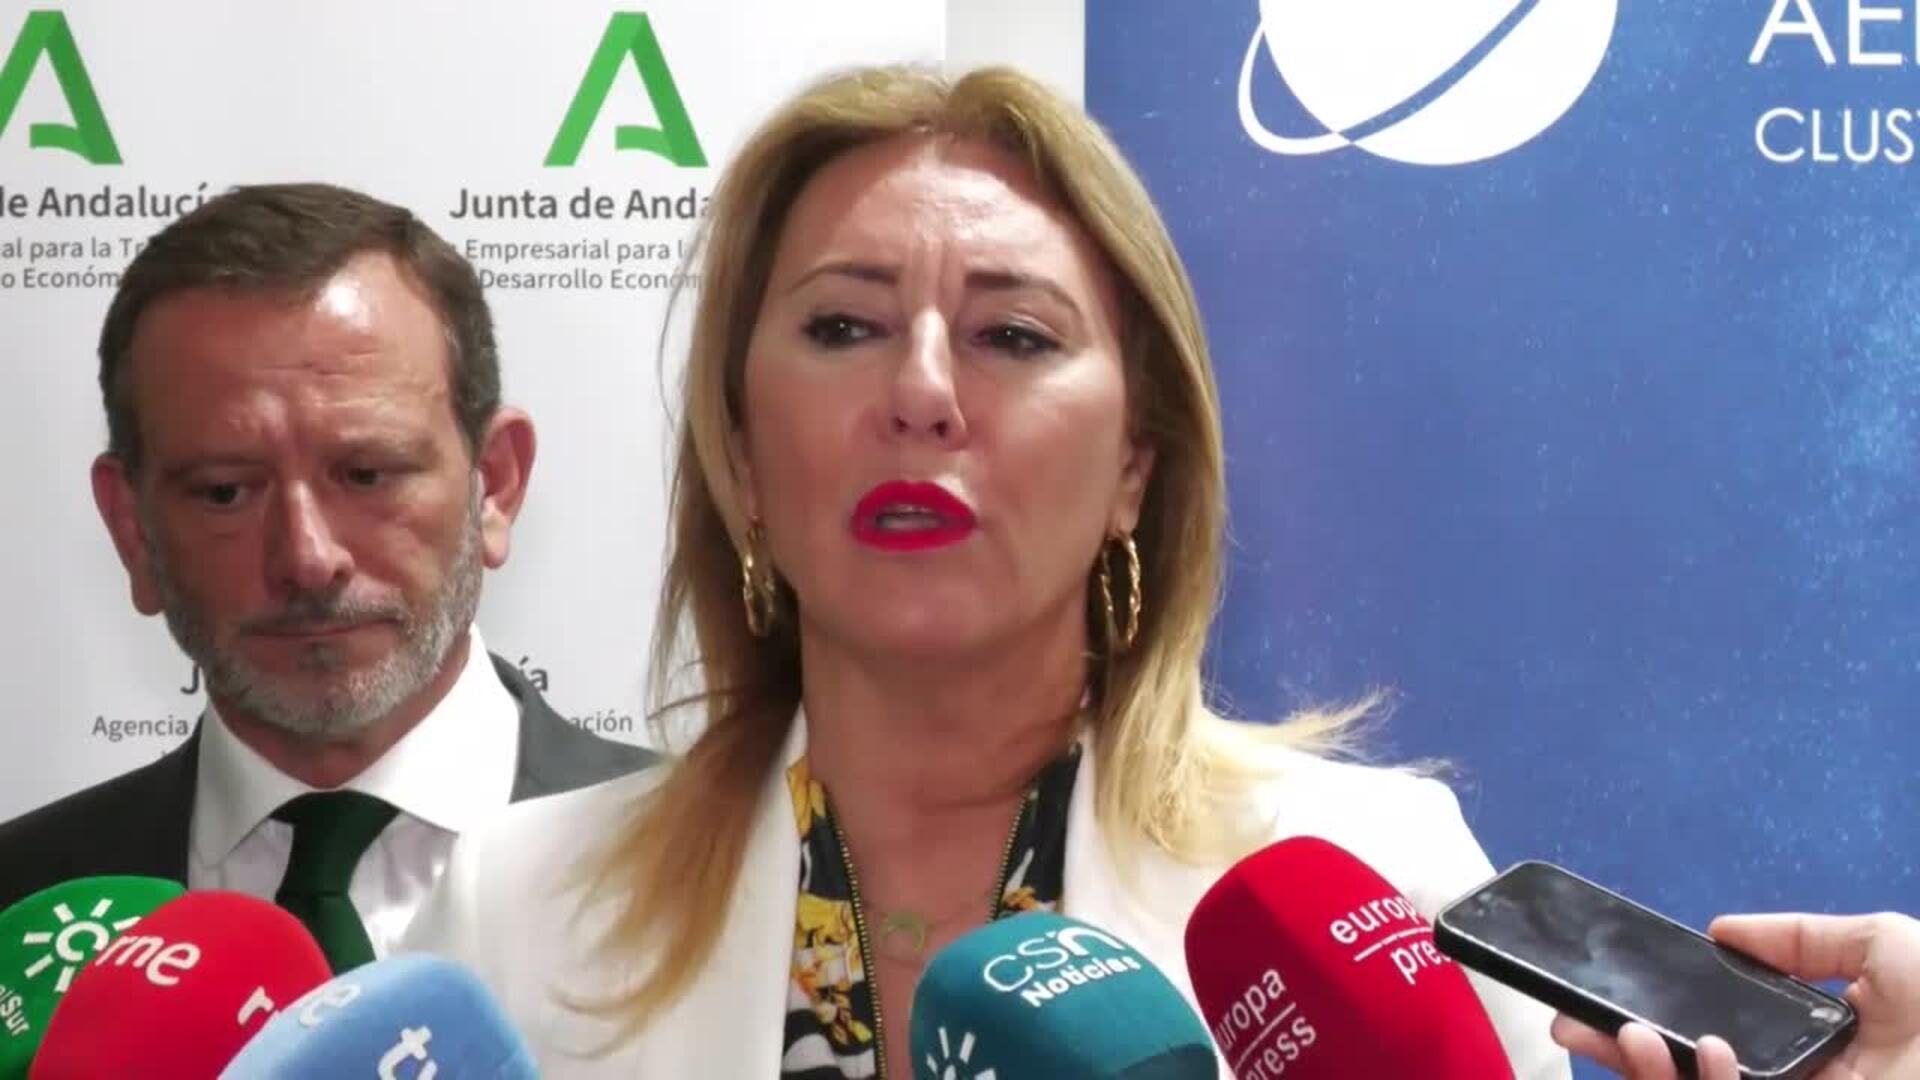 Andalucía espera que lanzamiento del Miura 1 se termine realizando "con éxito" tras cancelarse